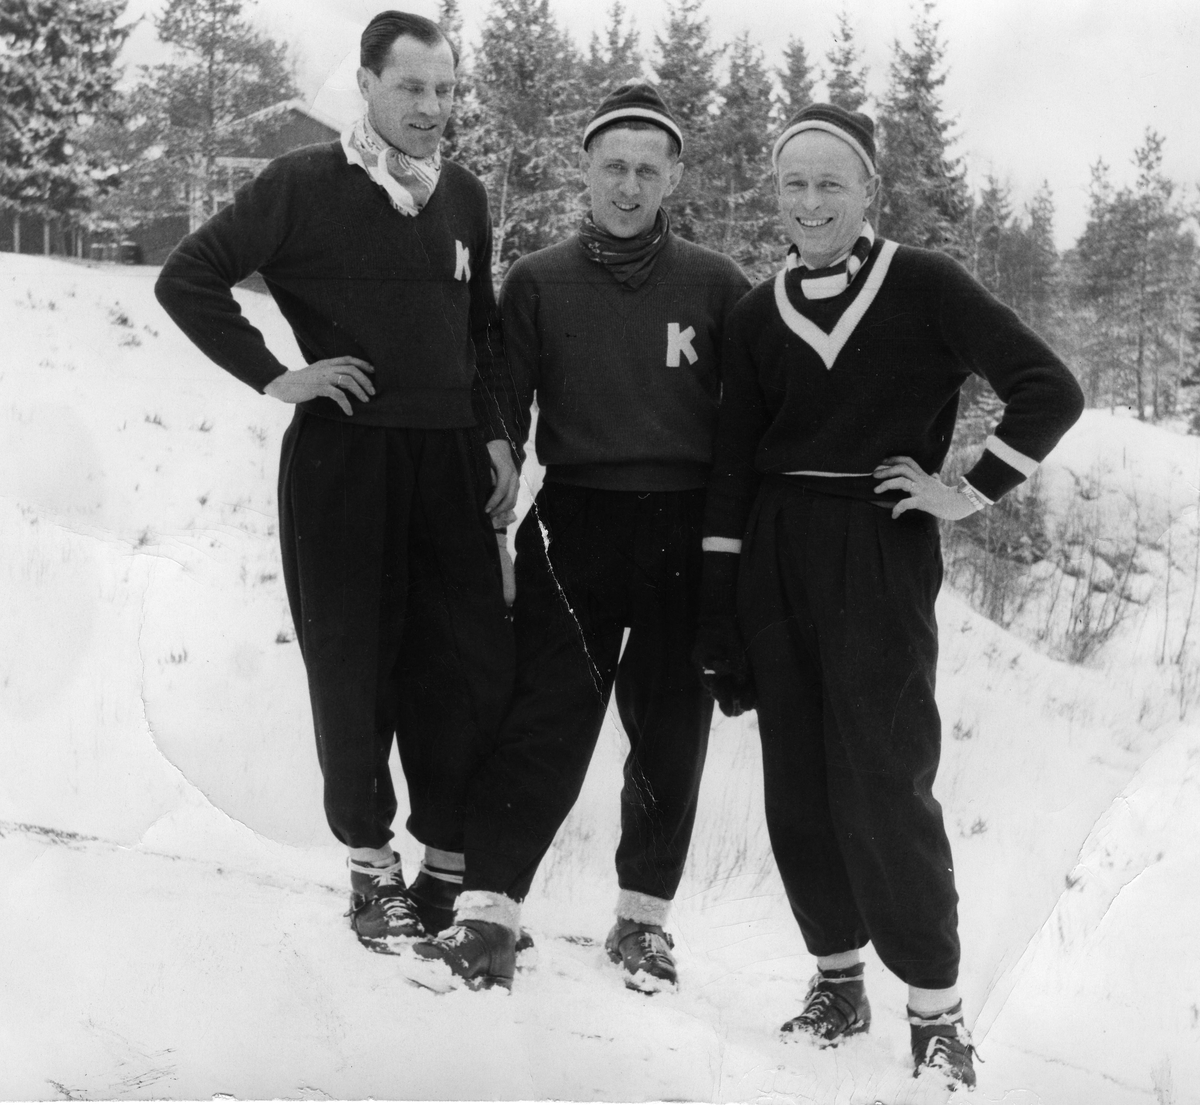 KIF-hoppere Arne Ulland, Petter Hugsted og Hans Jacob Haanes. The ski jumpers Arne Ulland, Petter Hugsted and Hans Jacob Haanes.